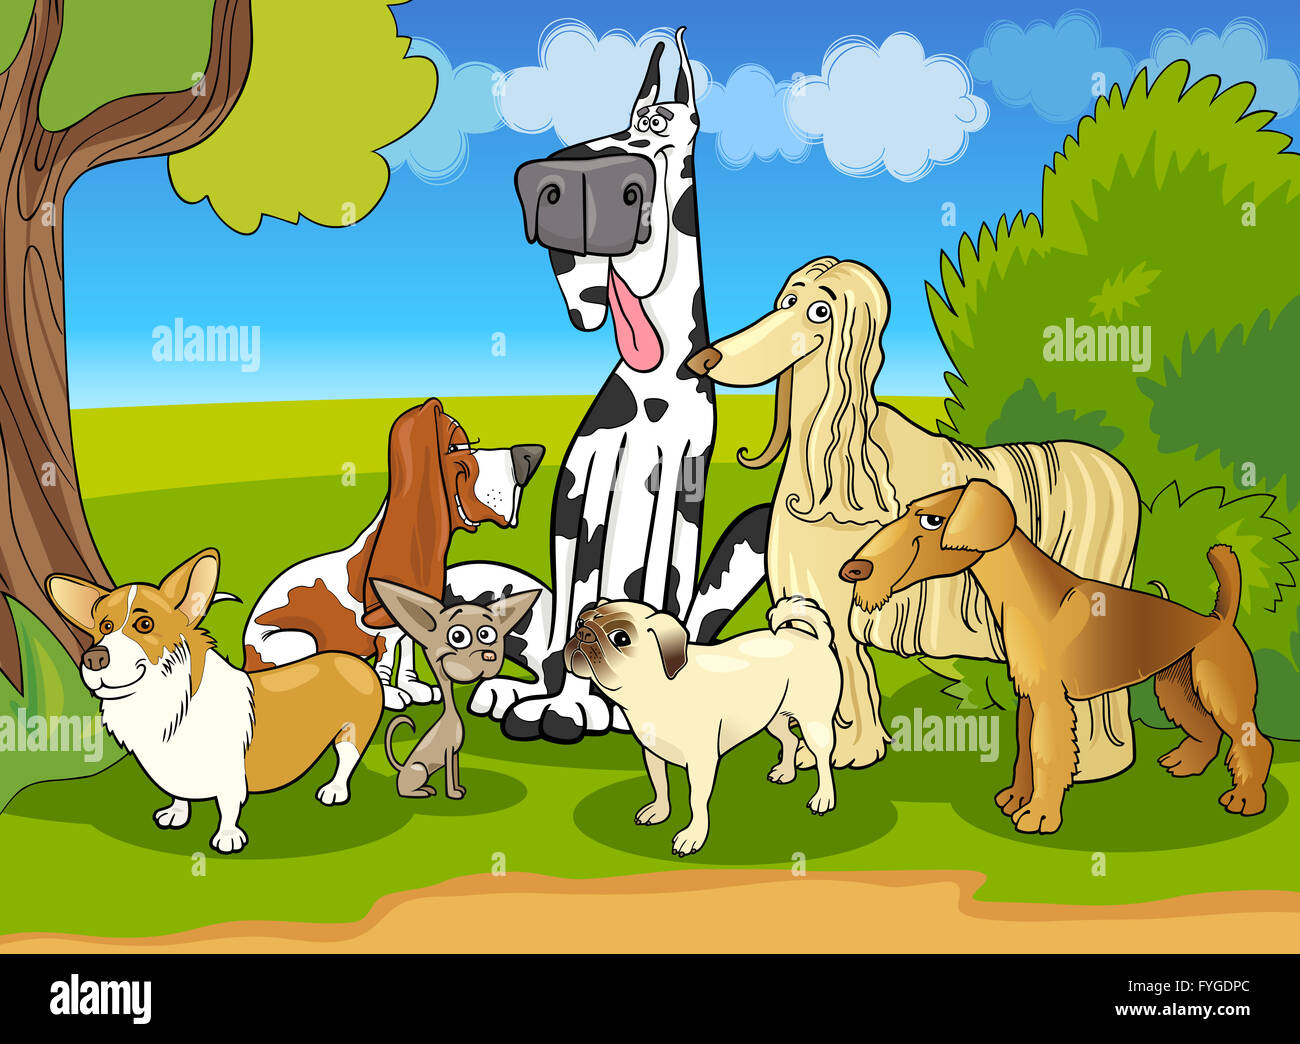 Les chiens de race pure illustration caricature de groupe Banque D'Images